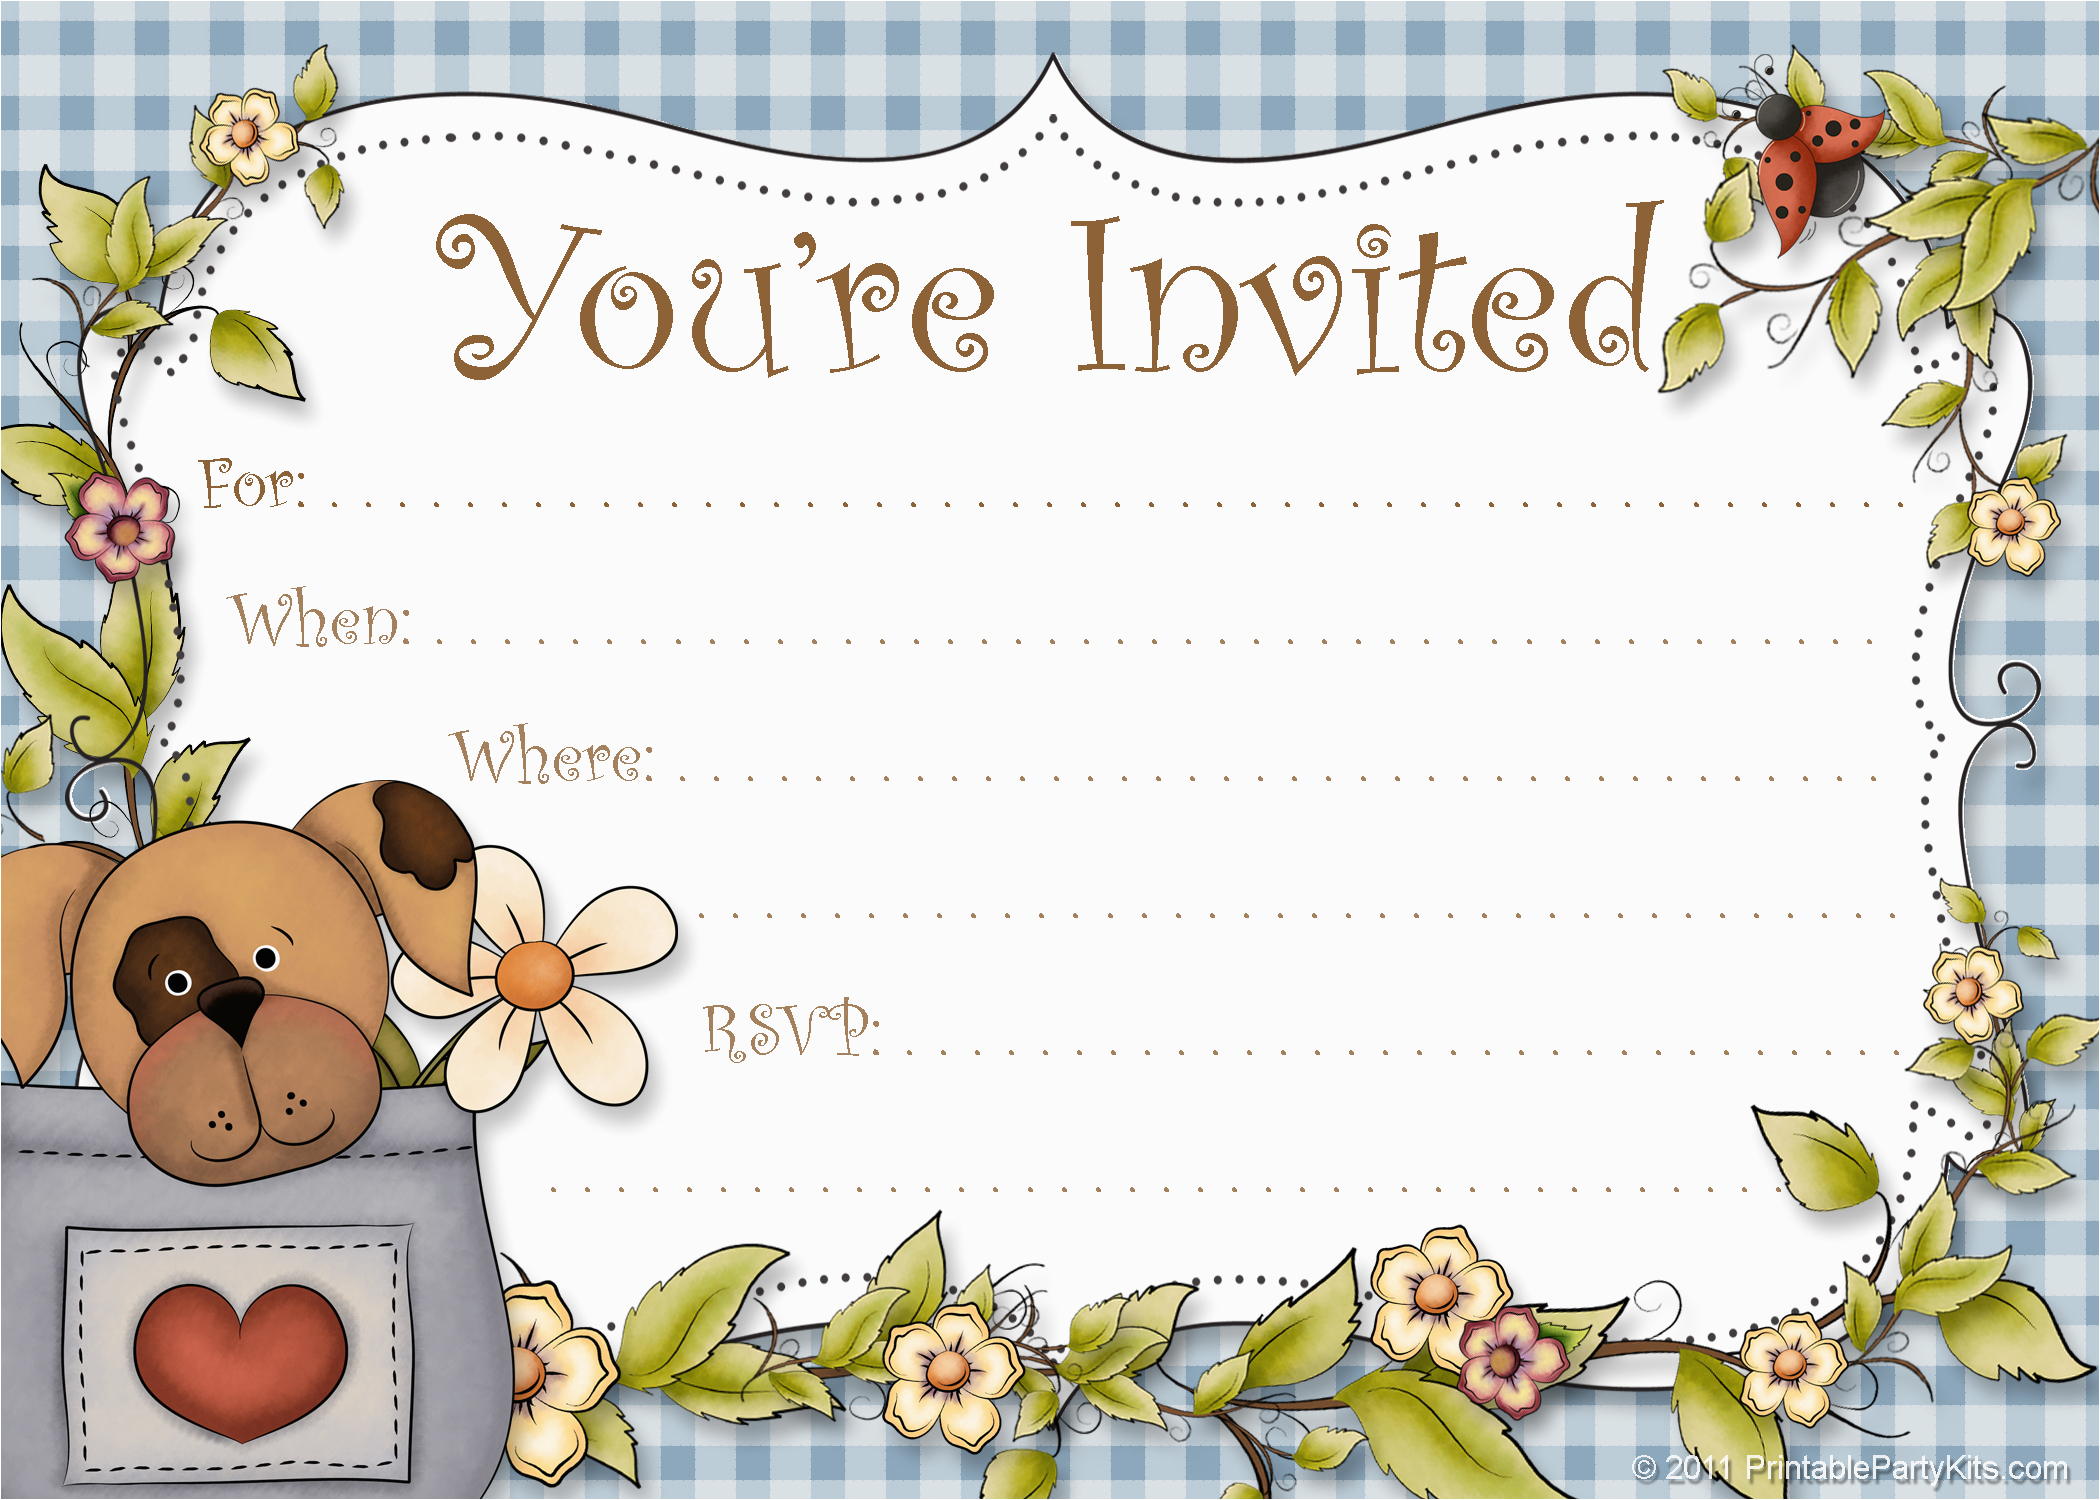 Dog Birthday Party Invitation Templates | Birthdaybuzz - Dog Birthday Invitations Free Printable